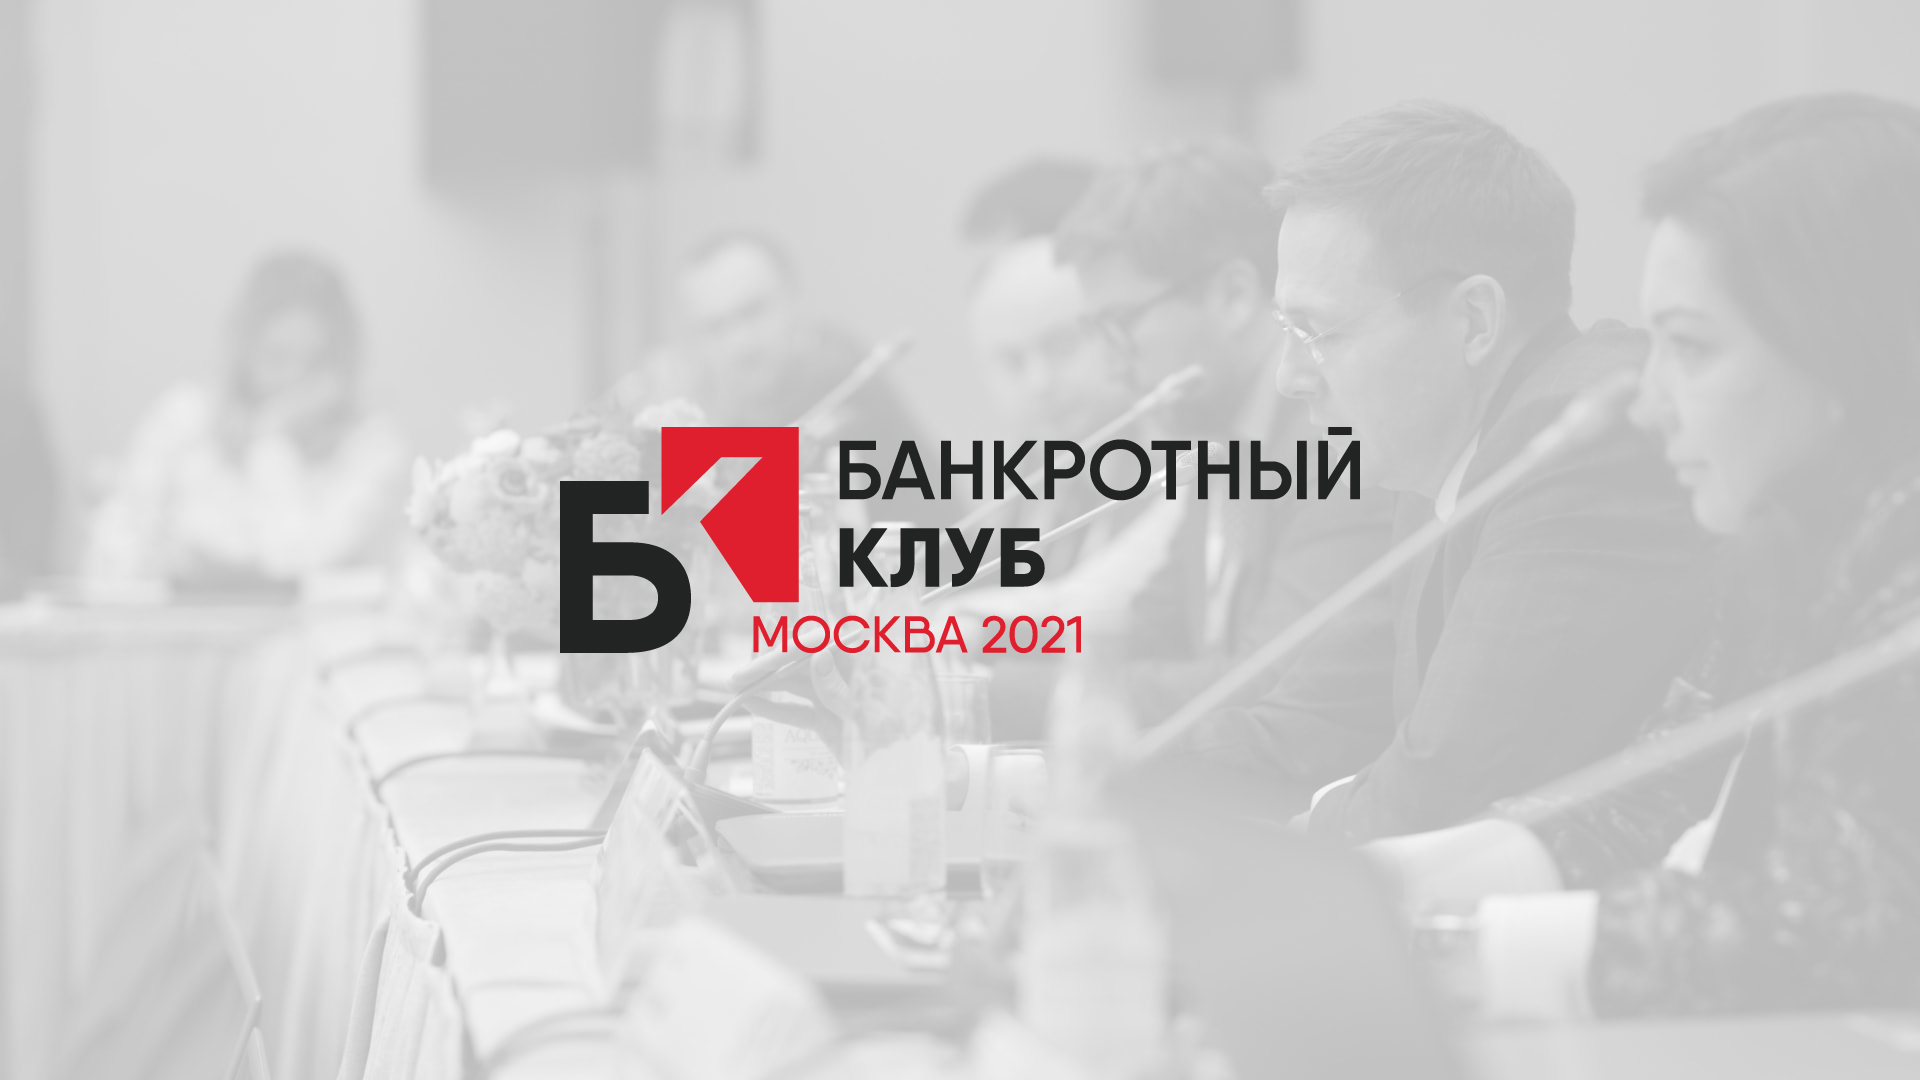 Запись заседания Банкротного клуба 17 декабря, Москва